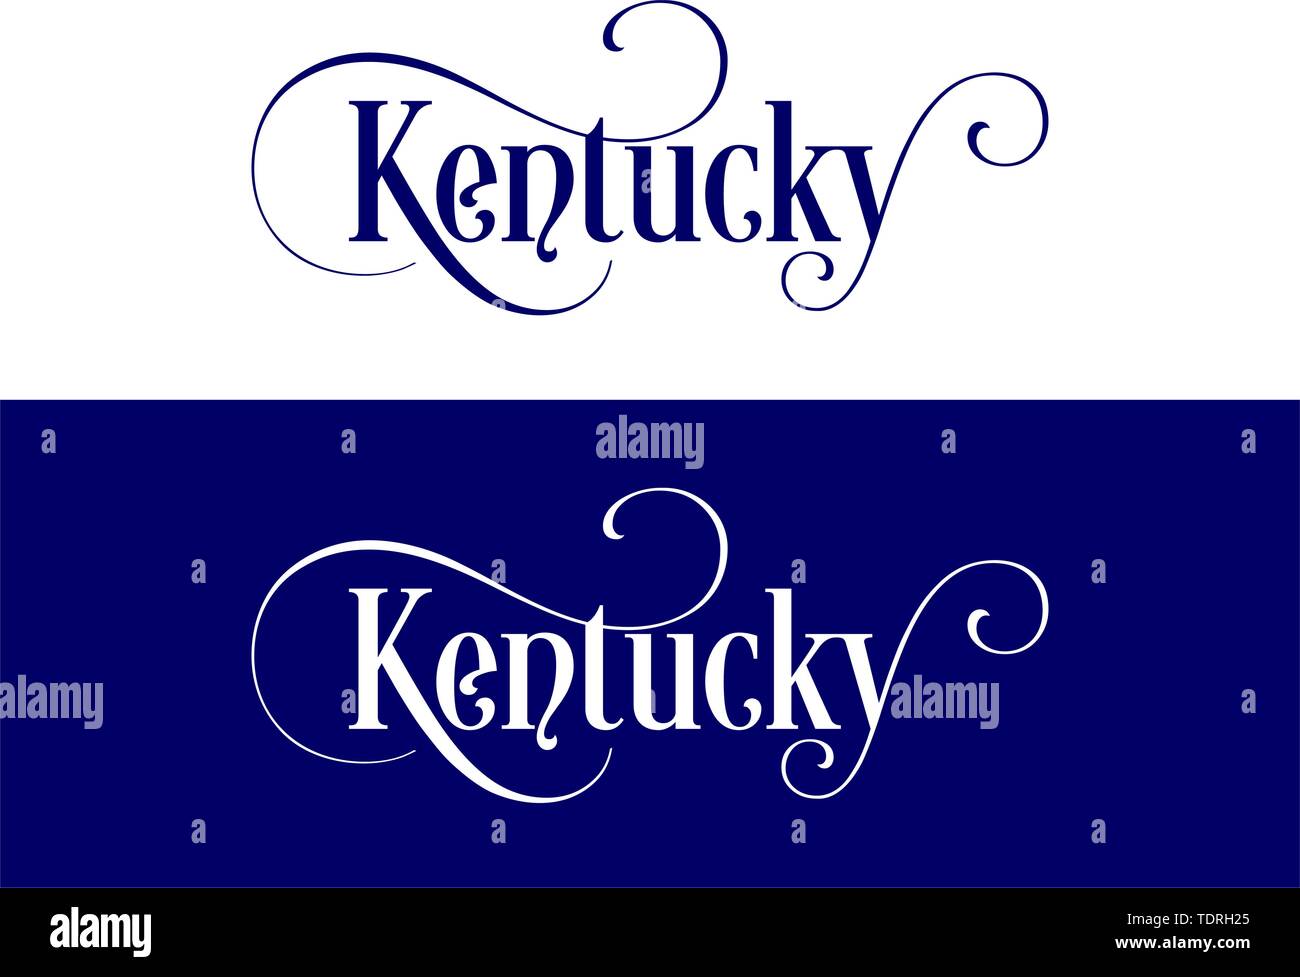 Tipografia del Stati Uniti Kentucky membri illustrazione manoscritte su UFFICIALE DEGLI STATI UNITI Colori di stato. La calligrafia moderno elemento per il design. Vecto semplice Illustrazione Vettoriale